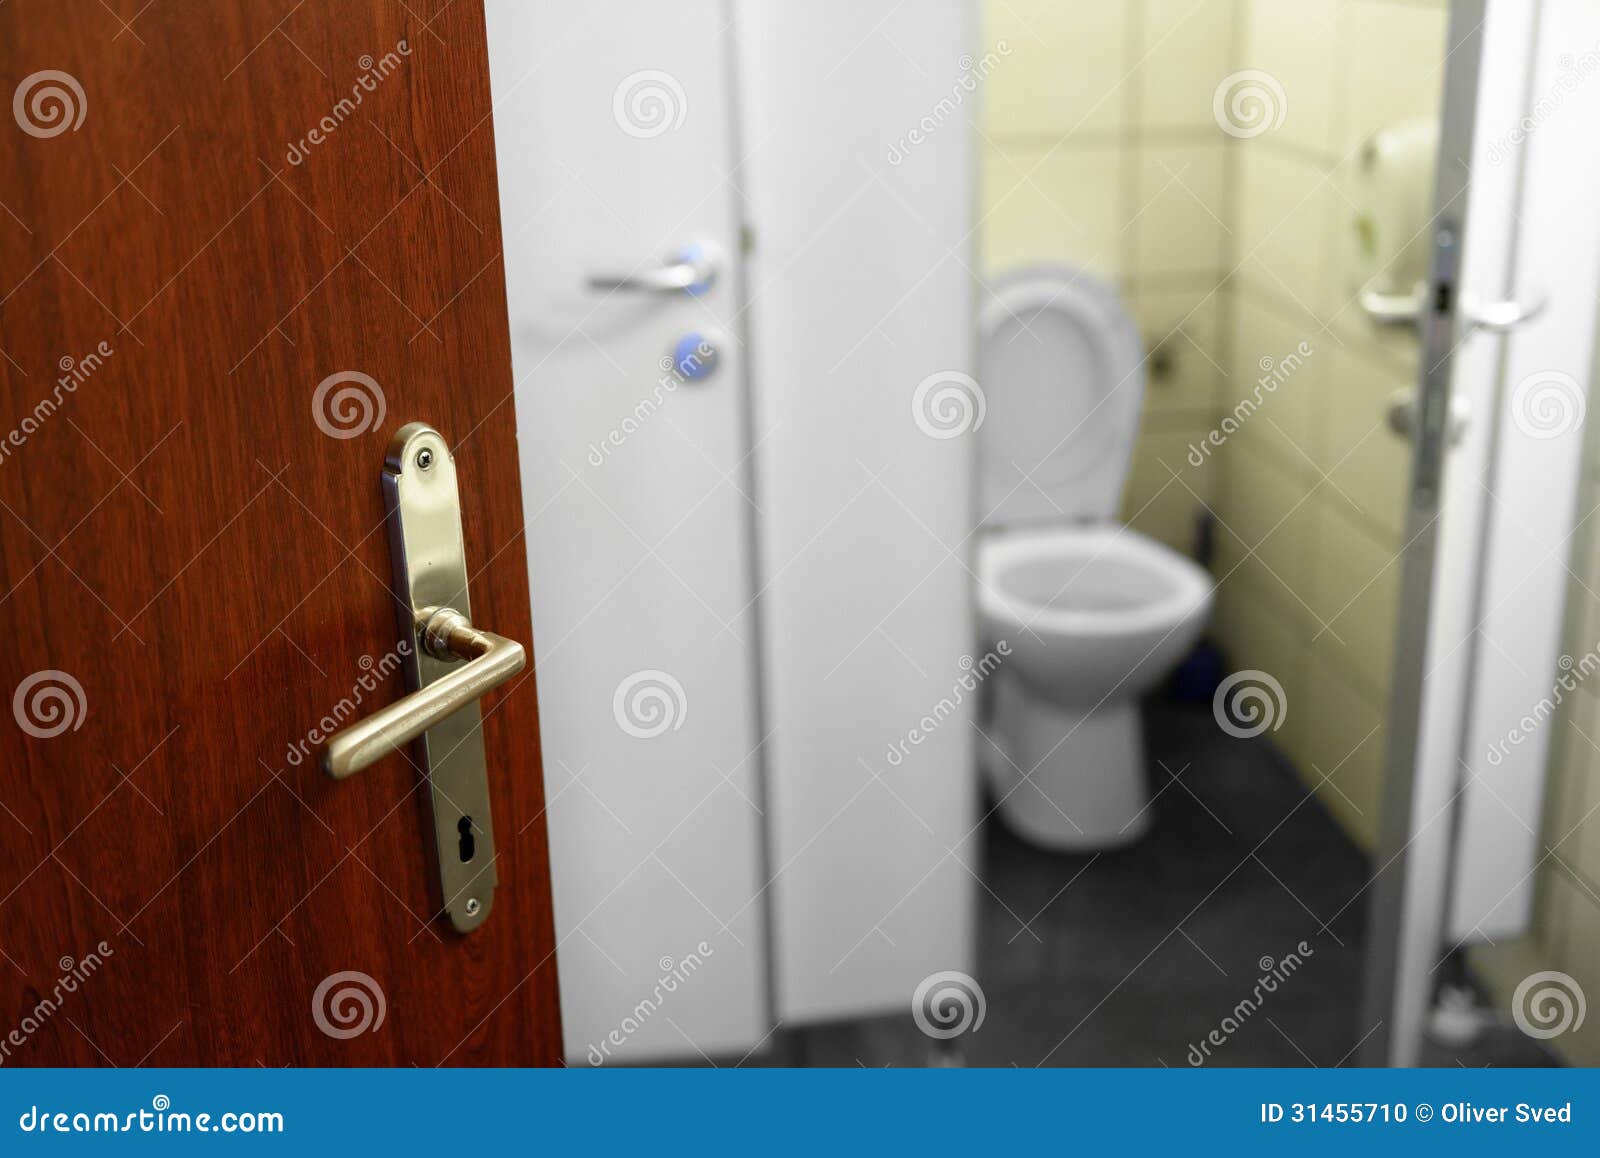 Туалет открытый мир взлома. Дверь в туалет. Открытая дверь в туалет. Открывание двери в туалете. Закрытая дверь в туалет.